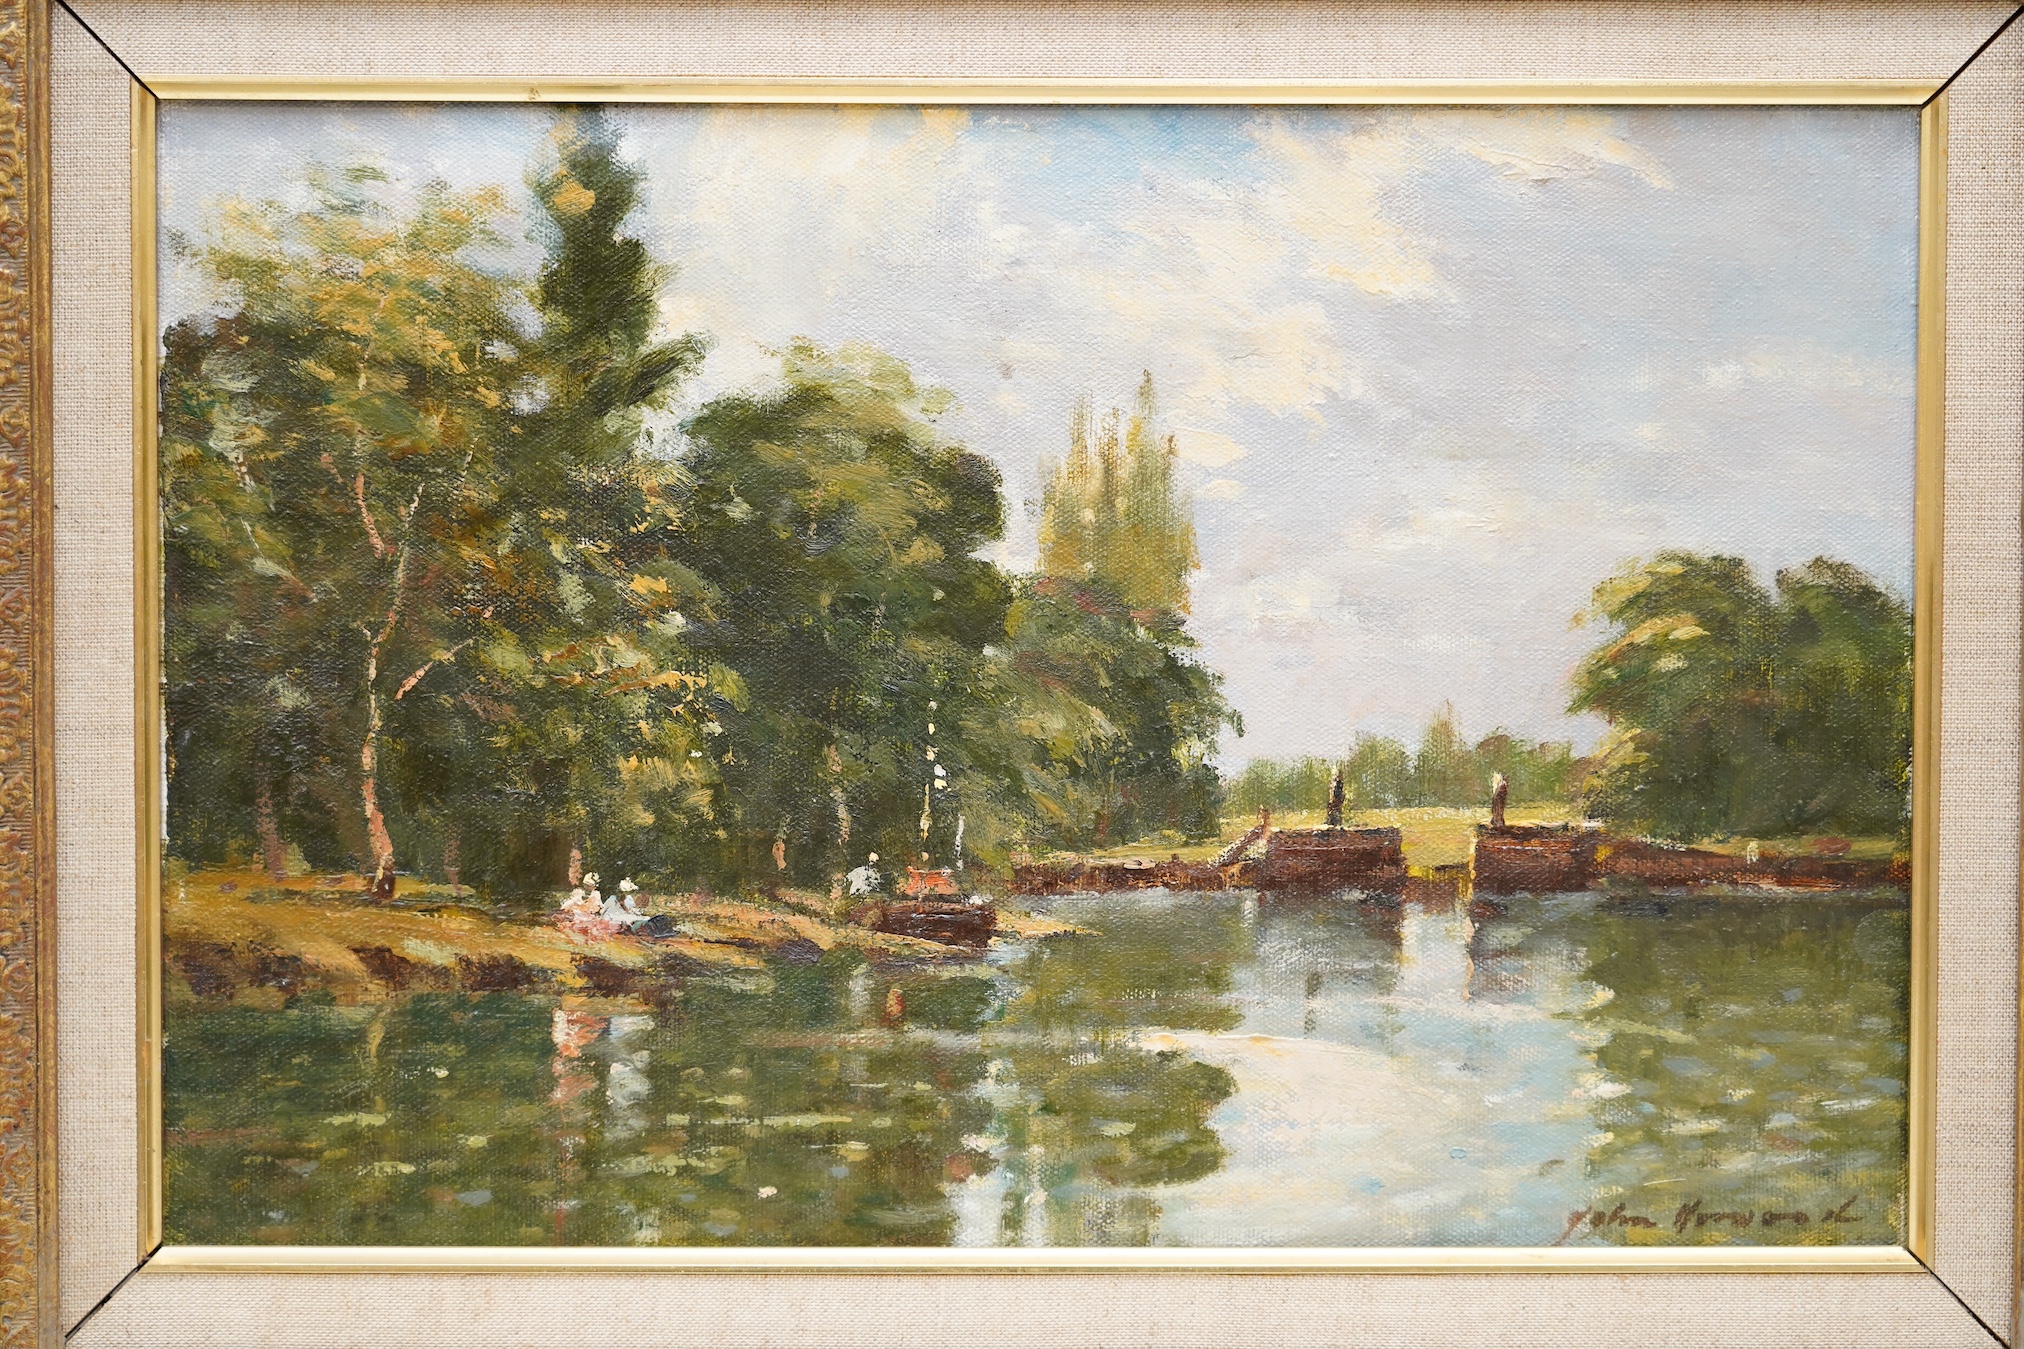 John Horwood (b.1934), Impressionist oil on canvas, River landscape with figures, signed, 24 x 28cm, ornate gilt framed. Condition - good